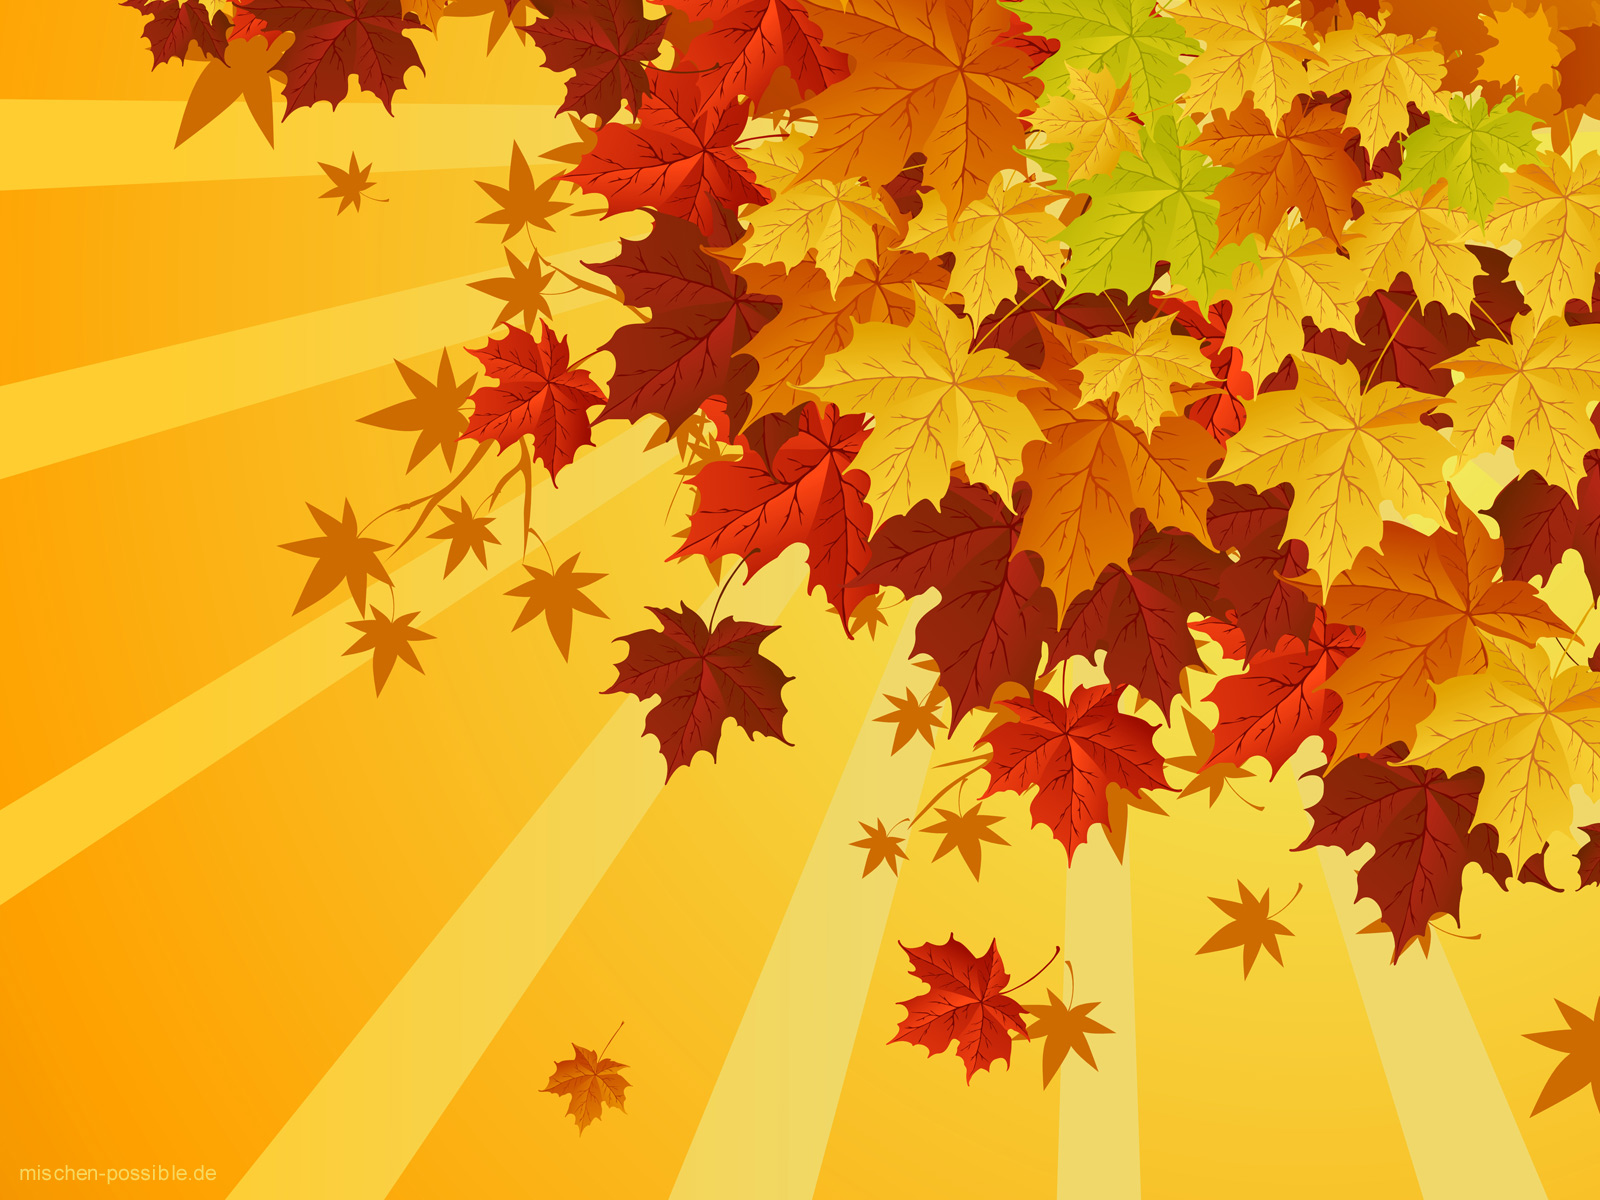 Eieieiverpoorten Wallpaper Herbst2 - Fall Leaves Vector Png , HD Wallpaper & Backgrounds